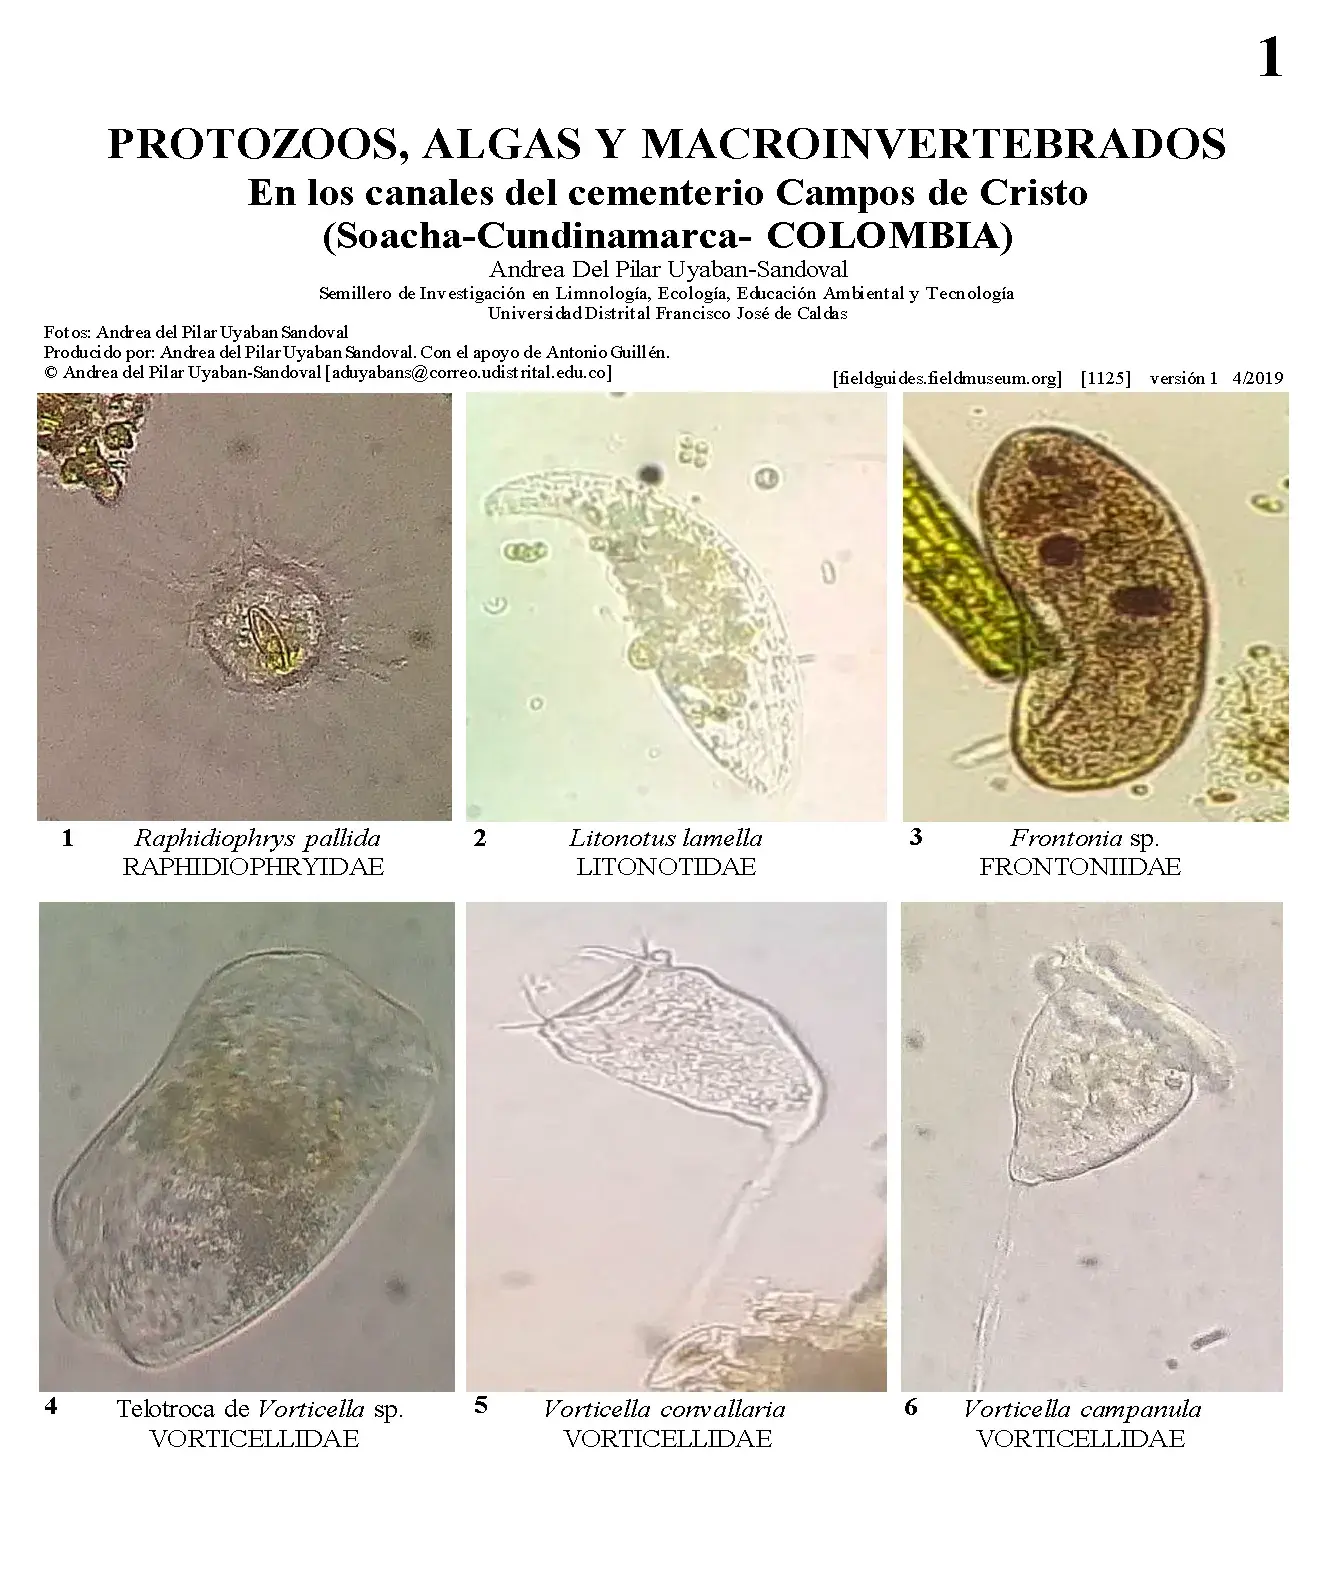 1125_colombia_protozoa_algae_and_macroinvertebrates_of_the_campos_de_cristo_cemetery.pdf 